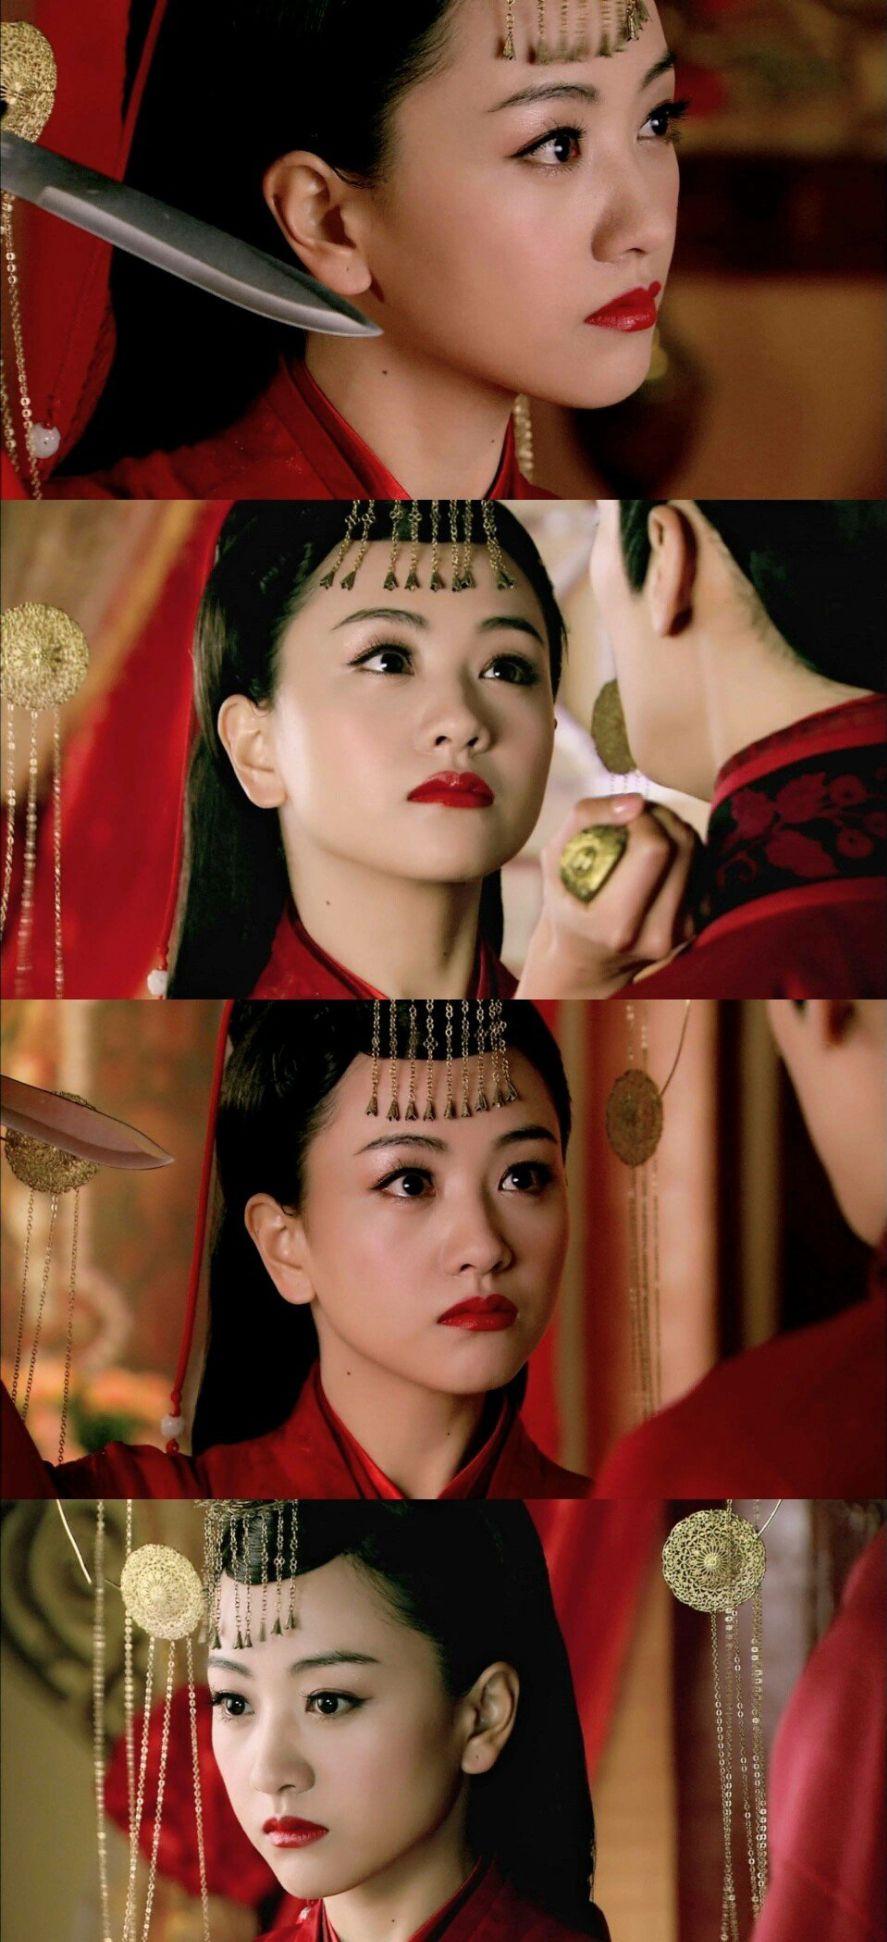 没什么感觉,反倒是里面的贵妃也就是杨蓉演的那个角色莫名地吸引我